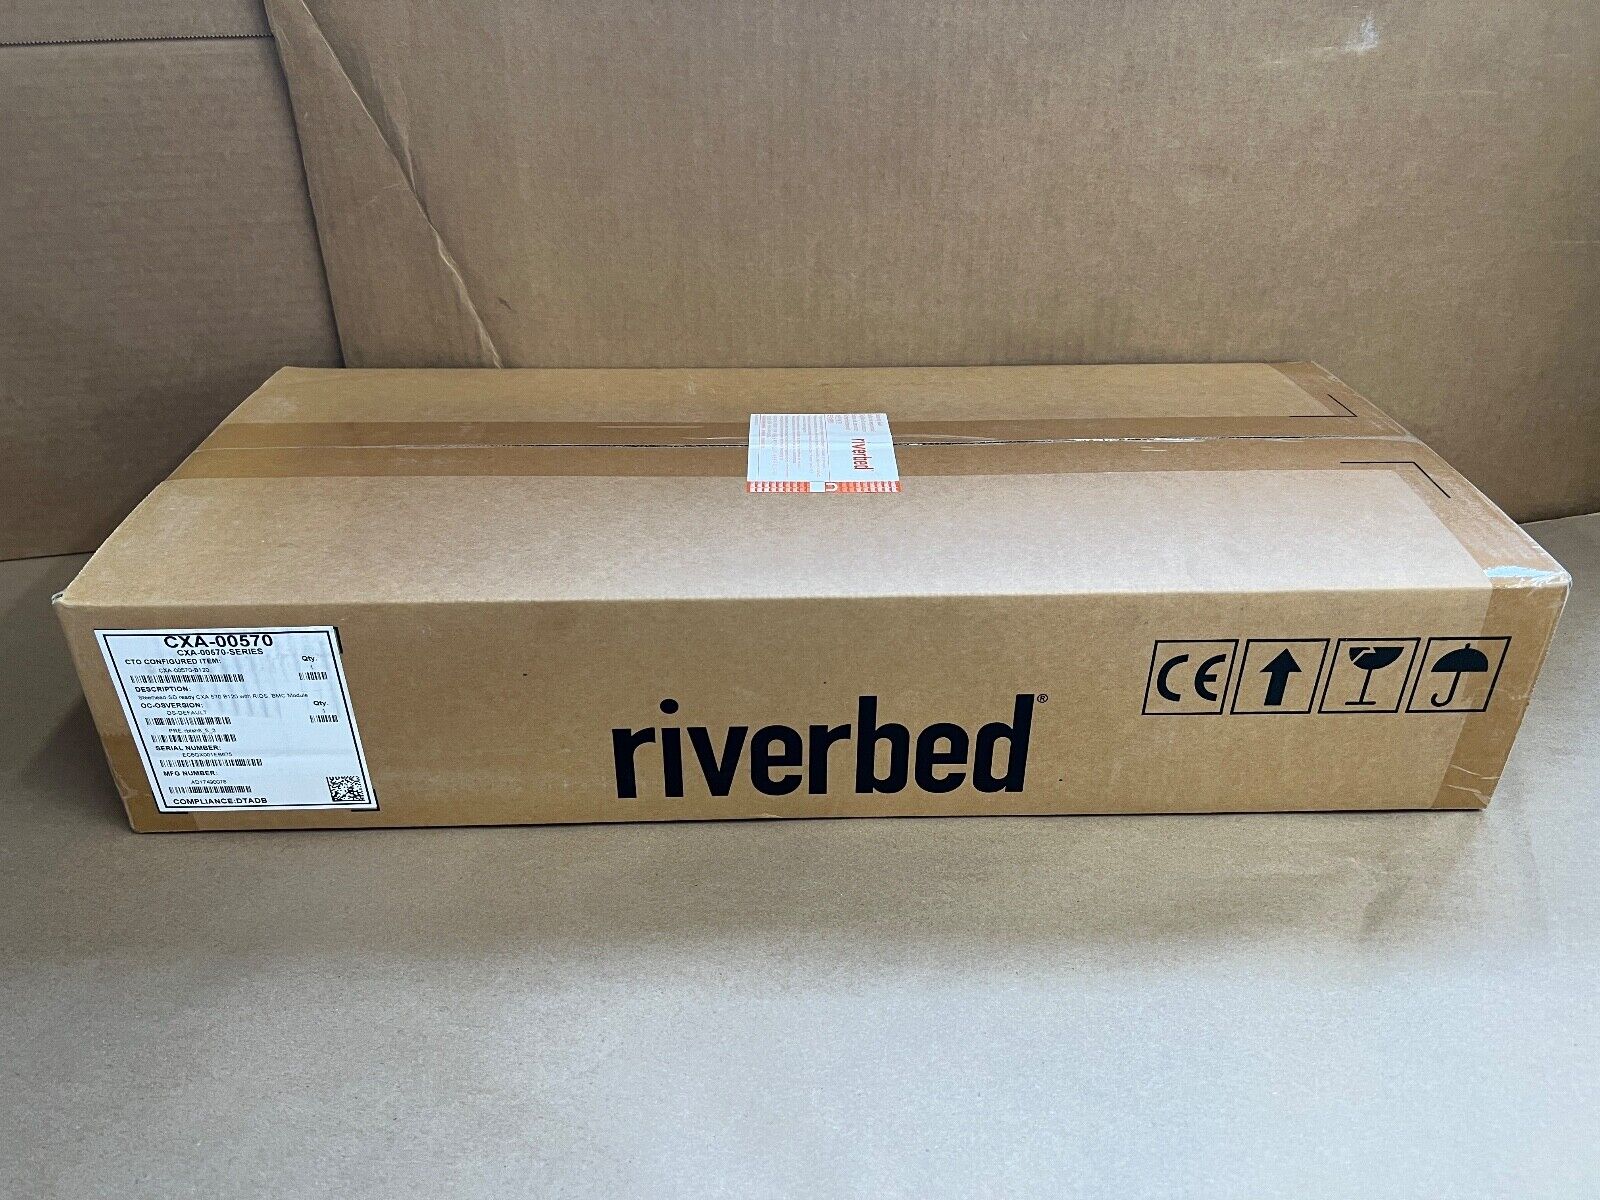 RIVERBED STEELHEAD (CXA-00570-B120) WAN + SD READY WITH RiOS, BMC MODULE - [NEW]